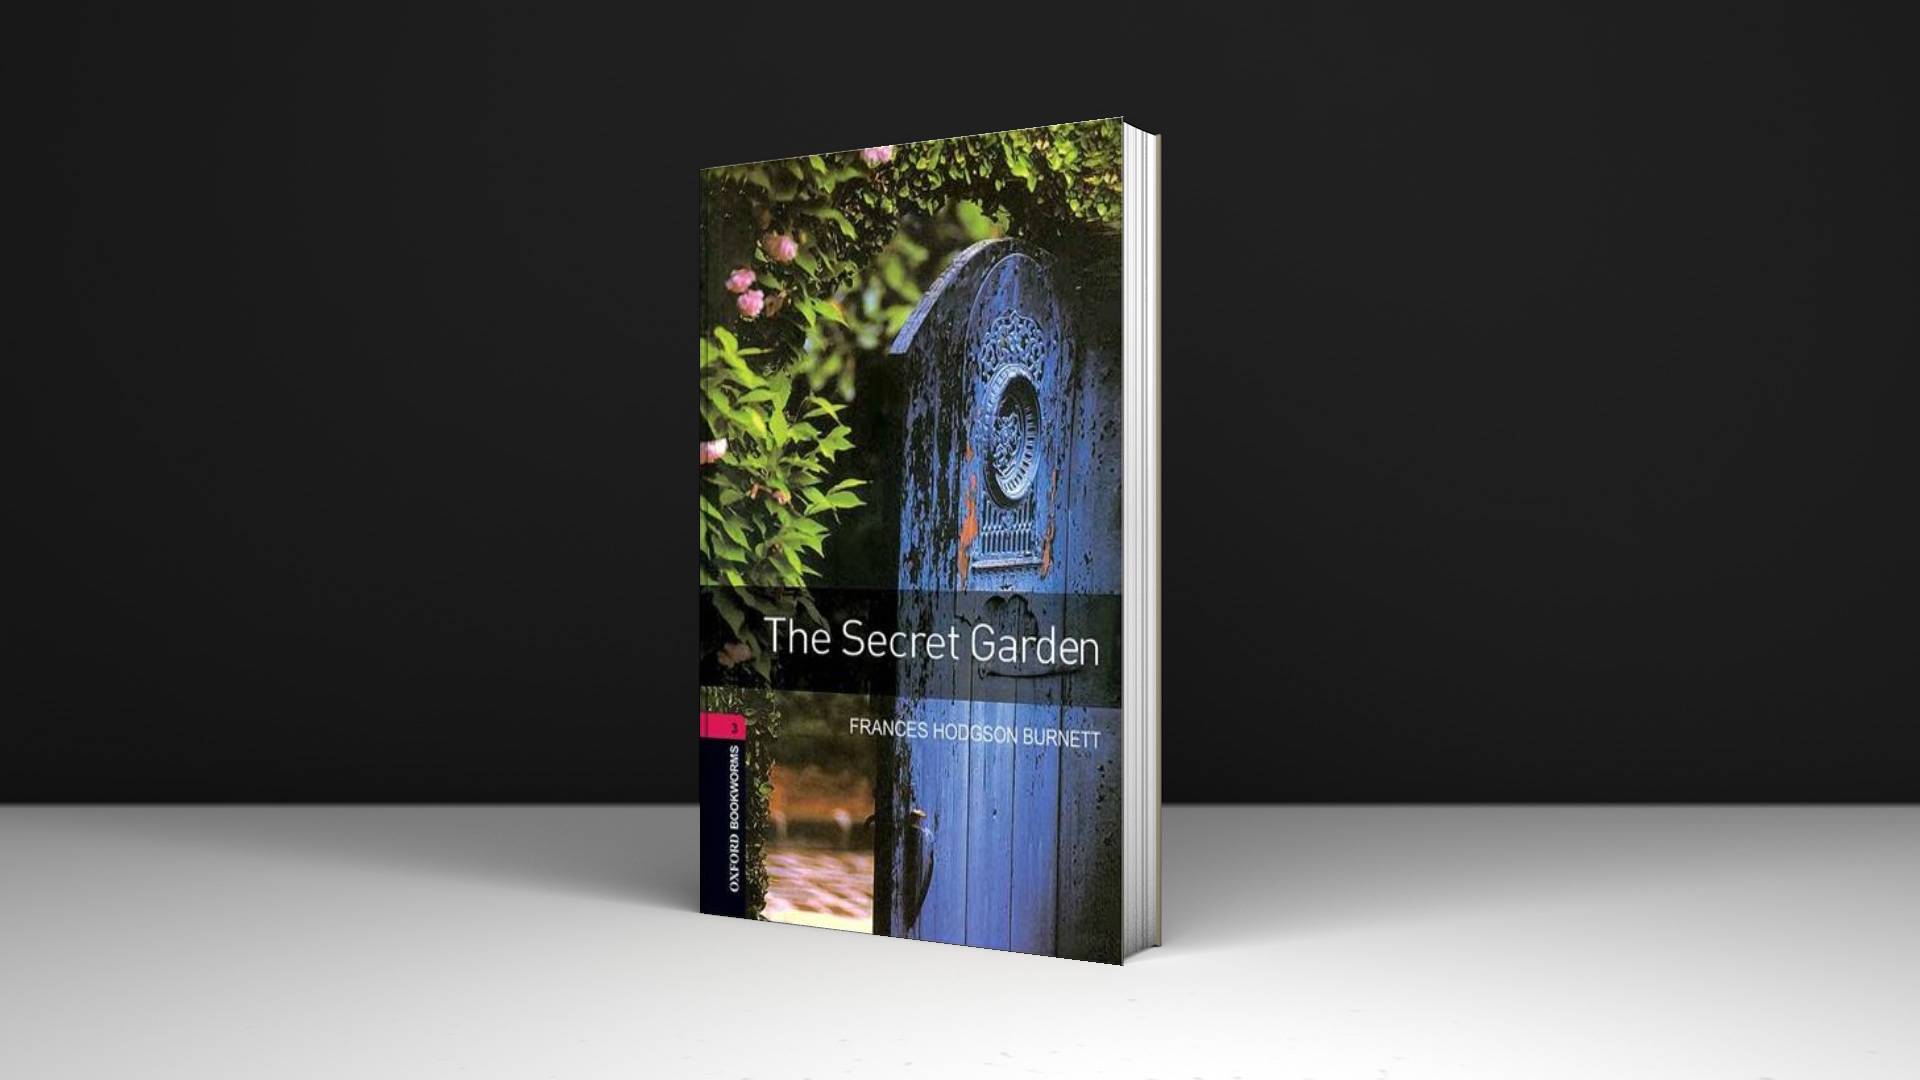 خرید کتاب داستان کوتاه انگلیسی | فروشگاه اینترنتی کتاب زبان | Oxford Bookworms 3 The Secret Garden | آکسفورد بوک ورمز سه باغ مخفی